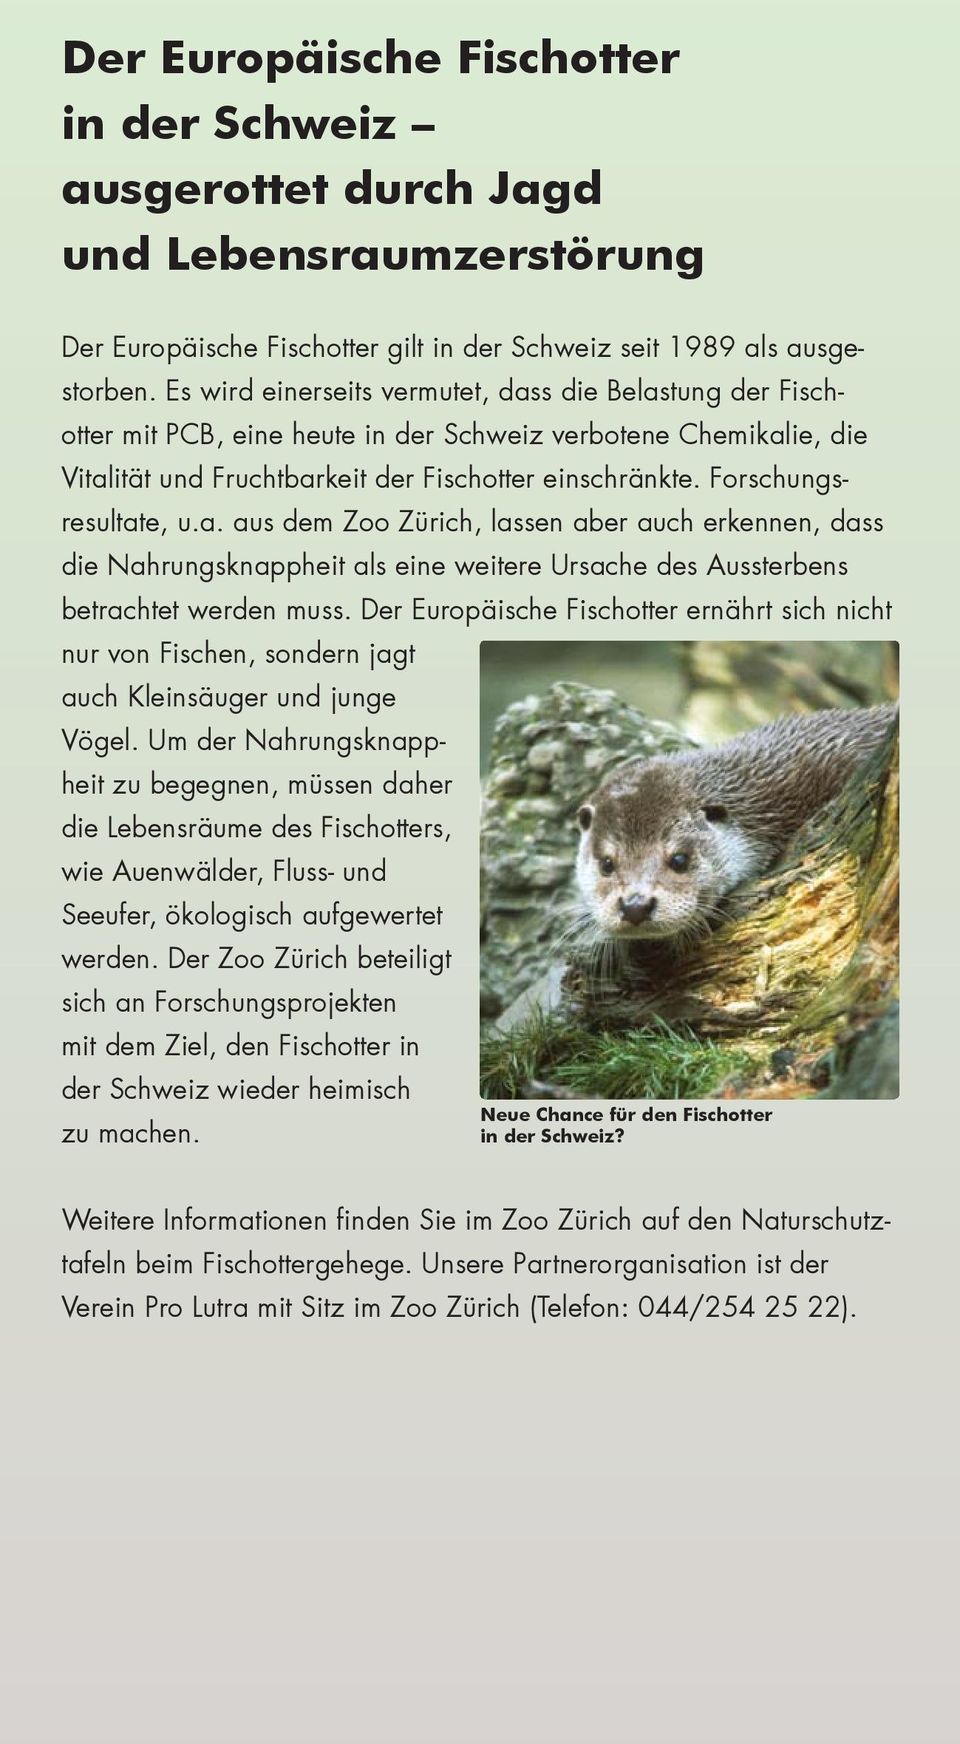 Forschungsresultate, u.a. aus dem Zoo Zürich, lassen aber auch erkennen, dass die Nahrungsknappheit als eine weitere Ursache des Aussterbens betrachtet werden muss.